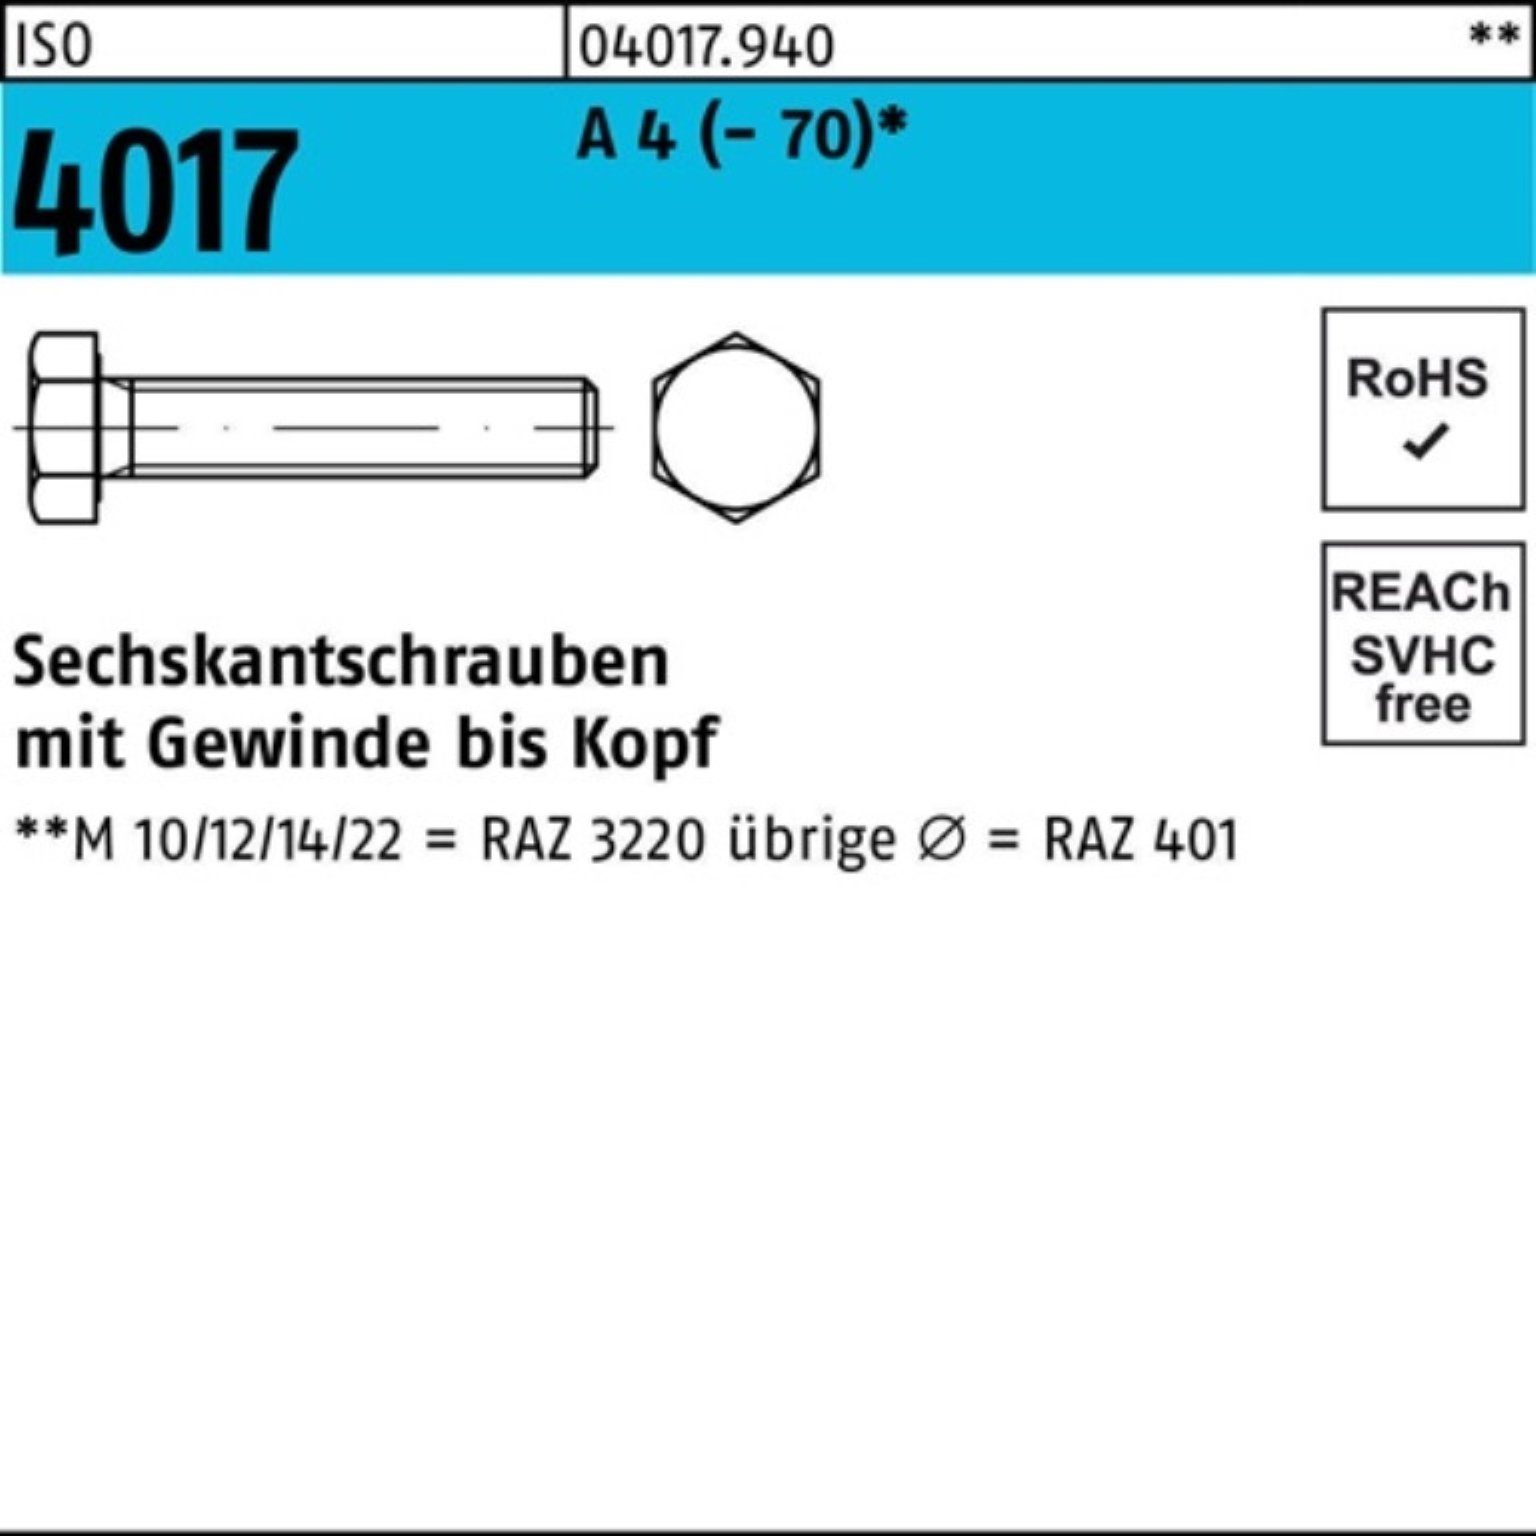 Bufab Sechskantschraube Pack Sechskantschraube 25 50 4 Stück 4017 VG (70) 100er M20x ISO A